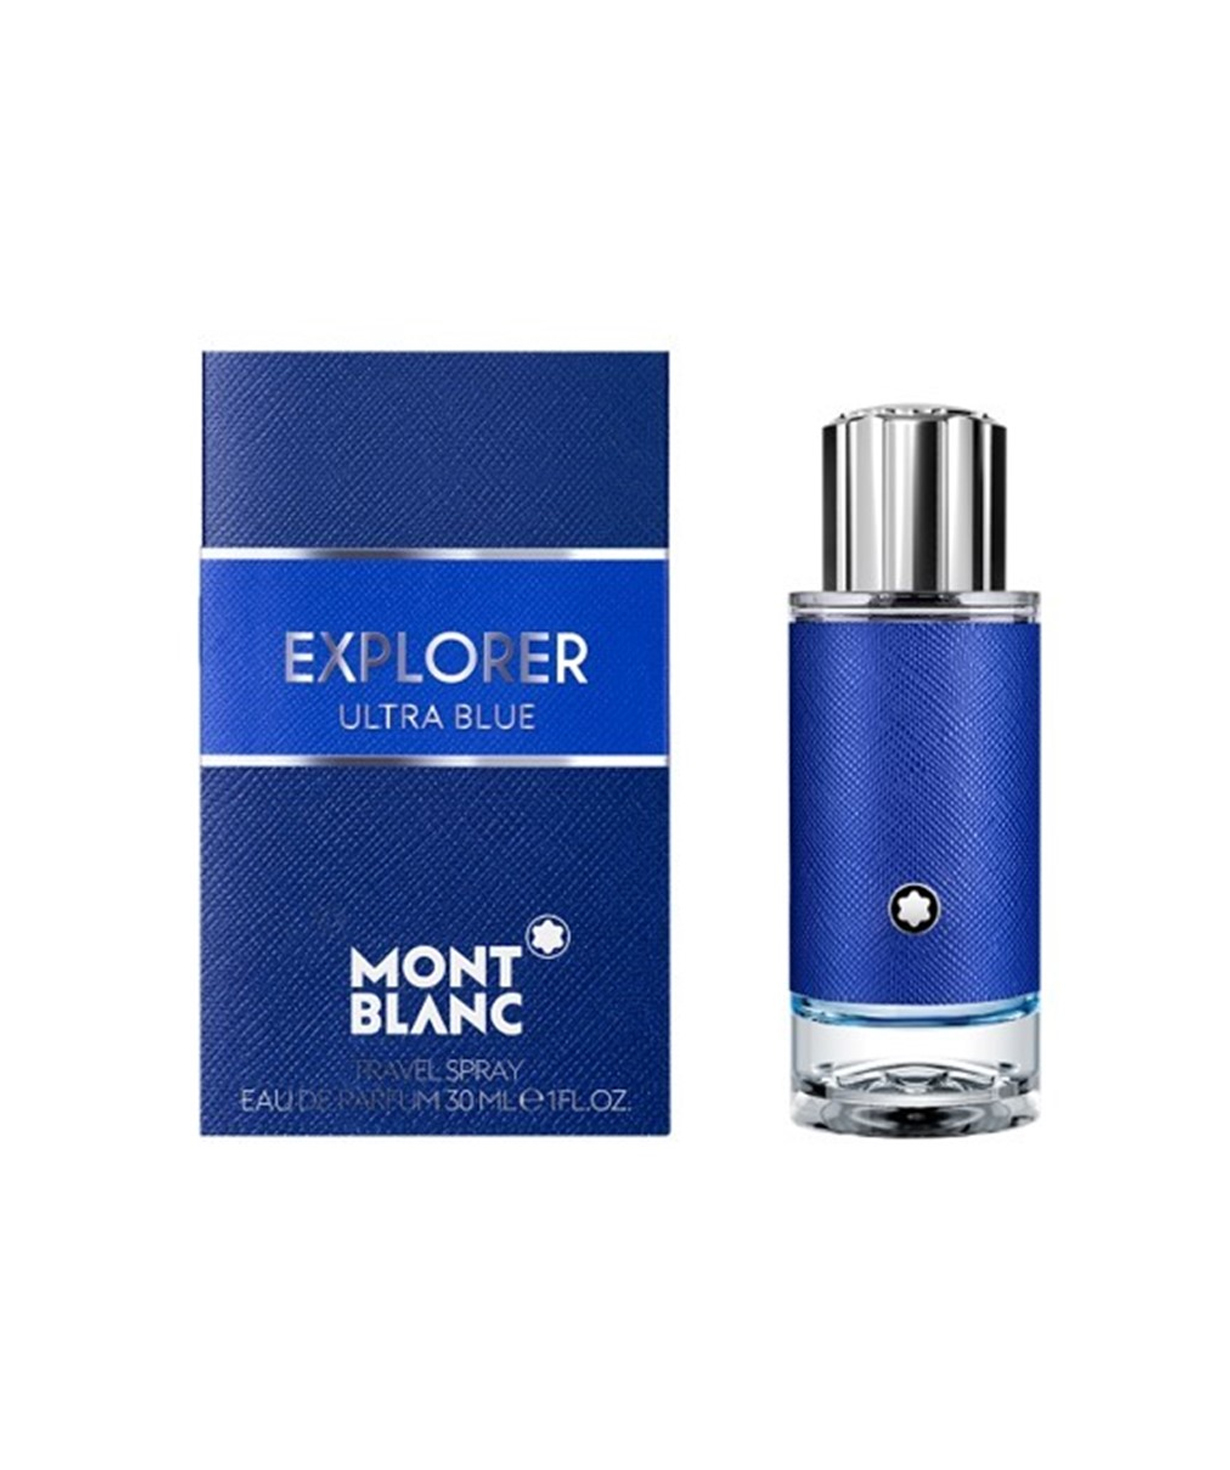 Perfume «Montblanc» Explorer Ultra Blue, for men, 30 ml